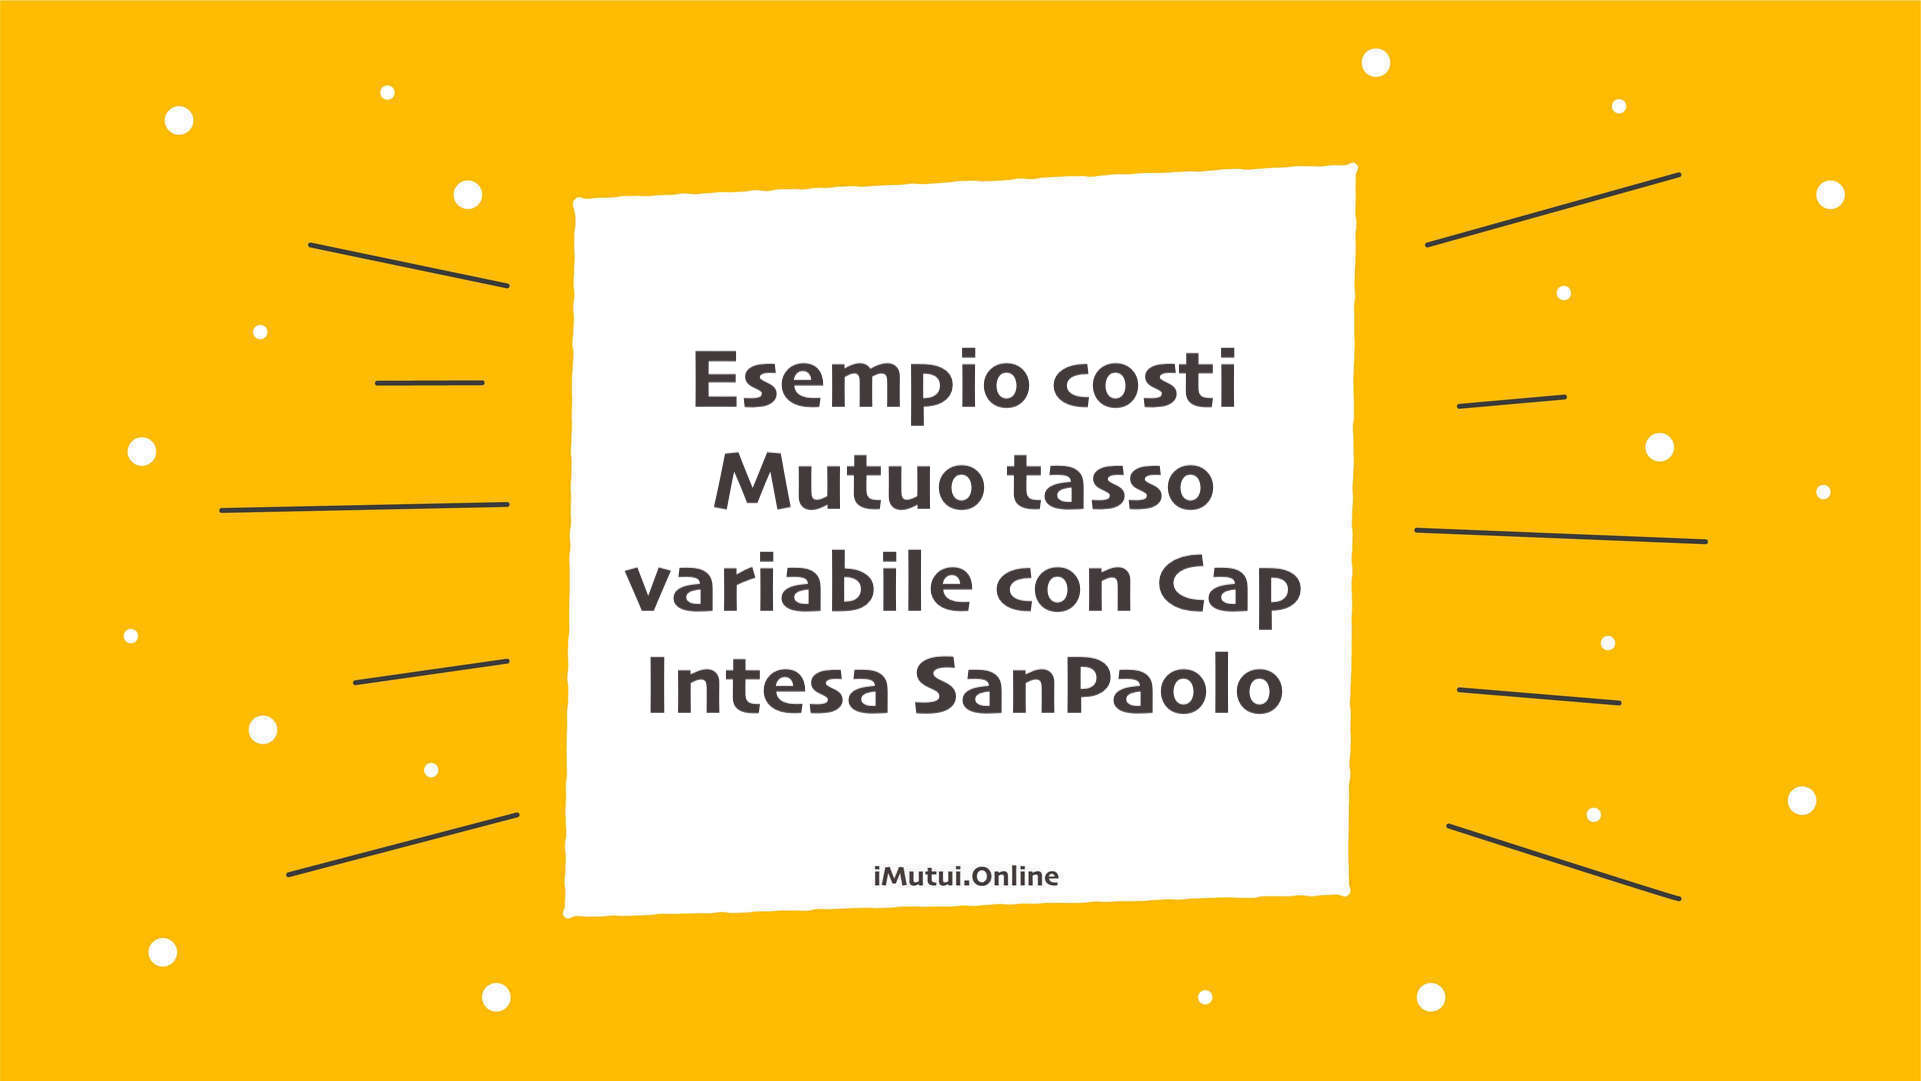 Esempio costi Mutuo tasso variabile con Cap Intesa SanPaolo